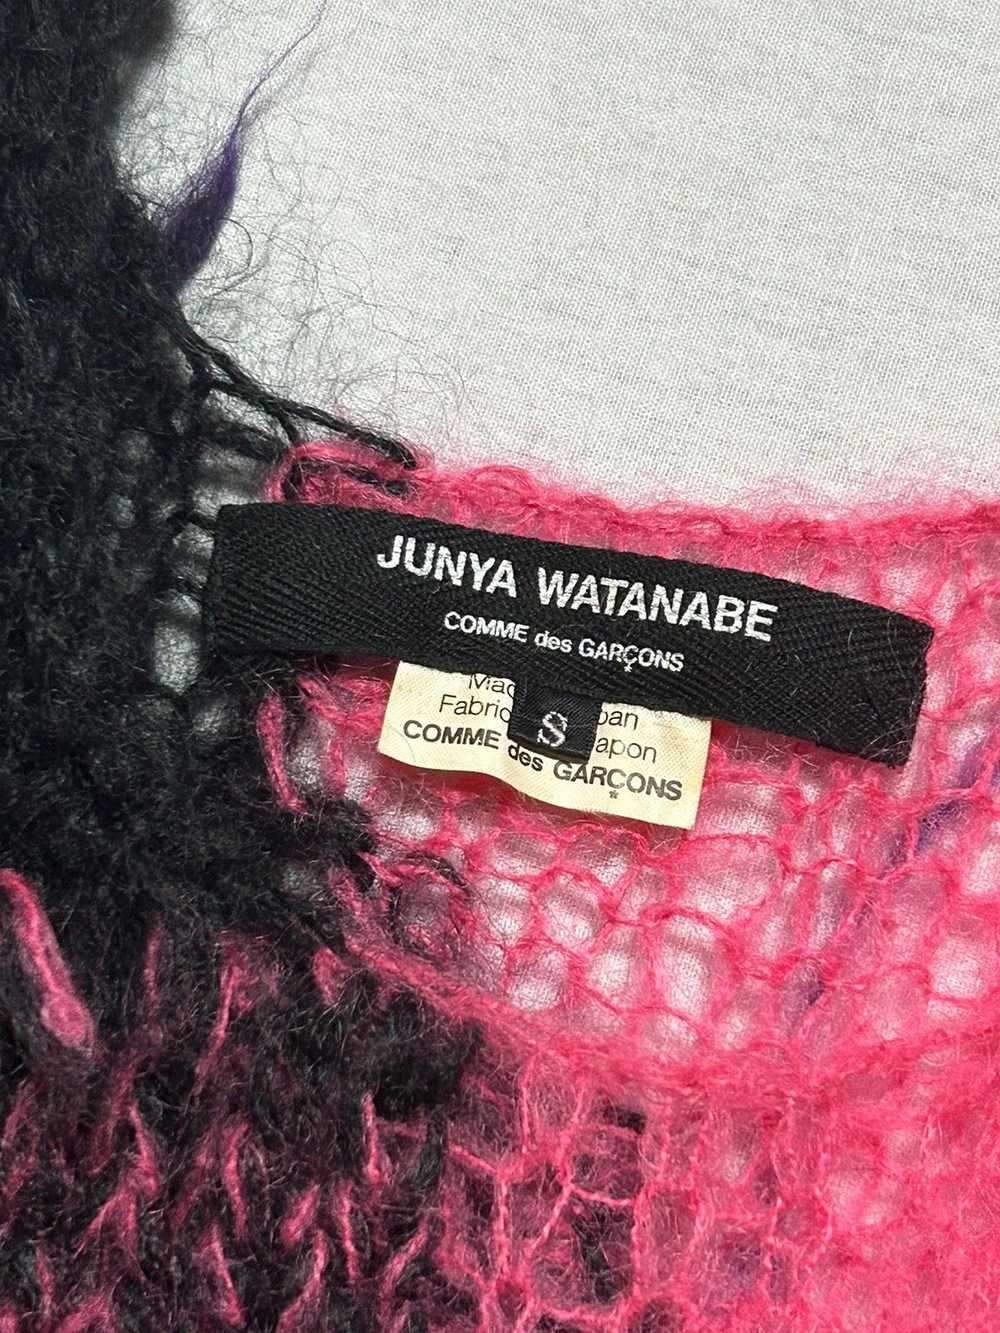 Junya Watanabe SS 2006 Grunge Punk knit - image 5